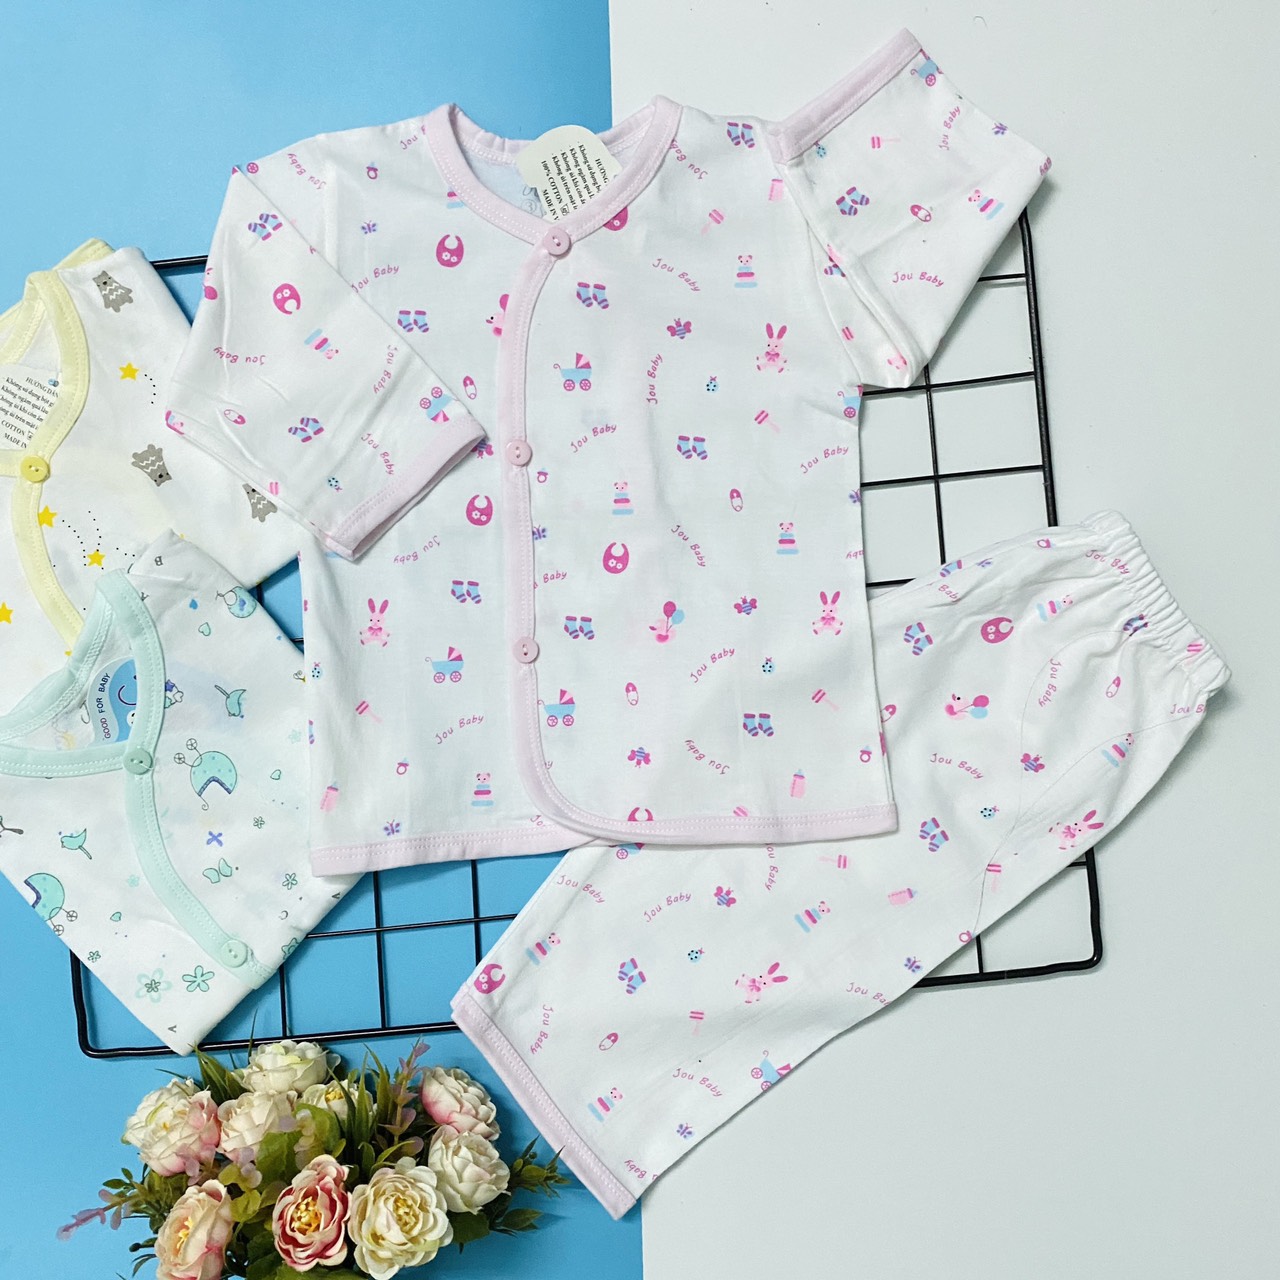 Combo 3 bộ áo quần sơ sinh tay dài cài nút xéo họa tiết JOU-TomTom Baby cho bé trai, bé gái - hàng Việt Nam chất lượng